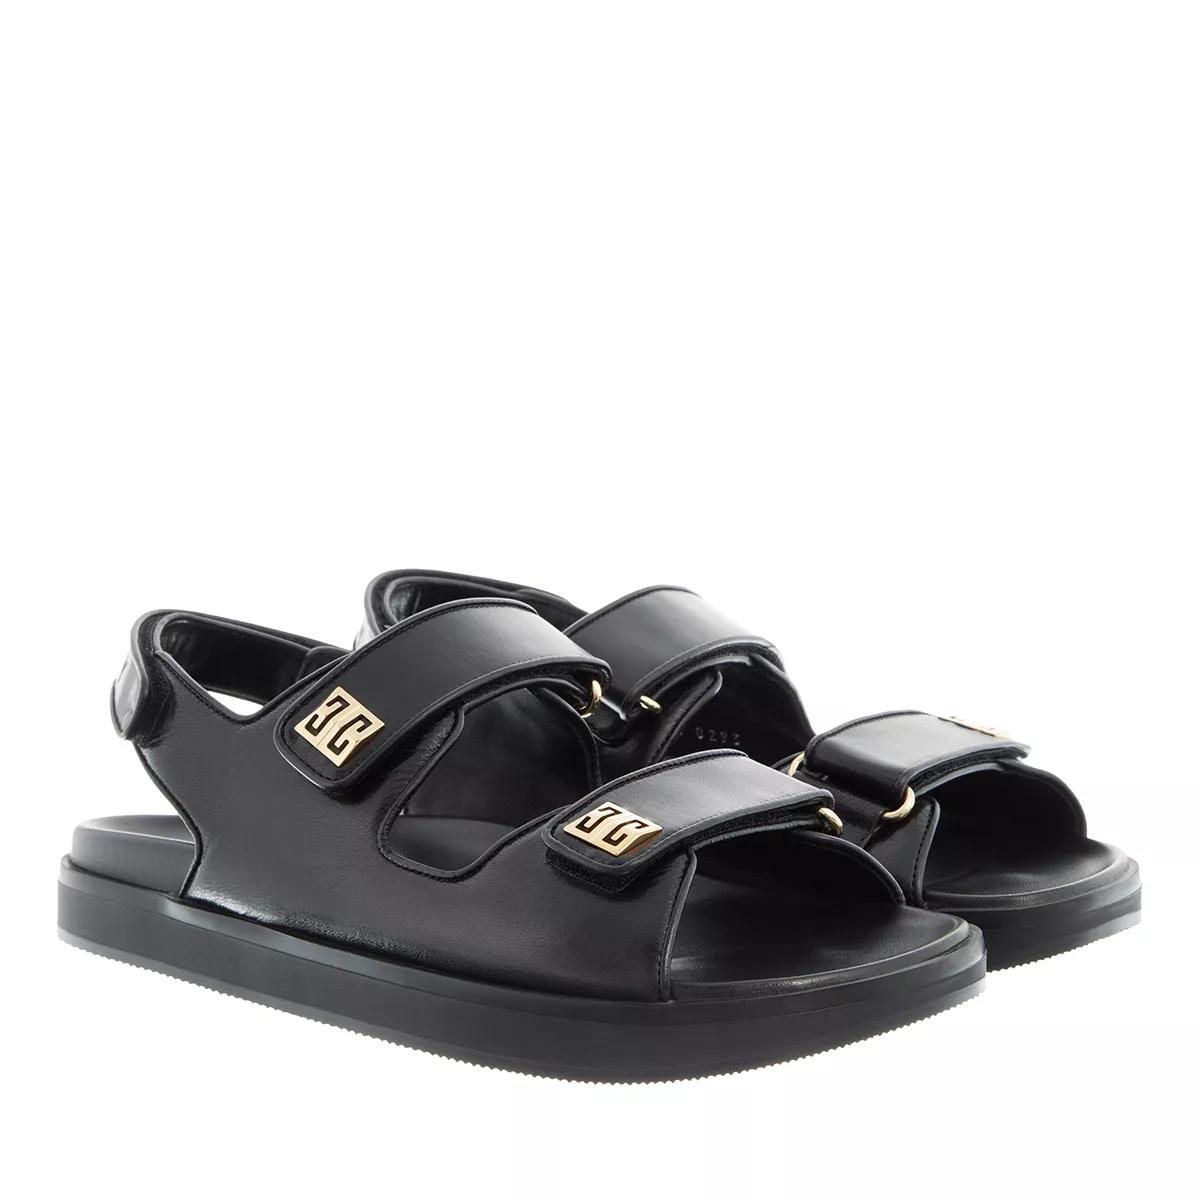 Givenchy Sandalen - 4G Strap Flat Sandals - Gr. 36 (EU) - in Schwarz - für Damen von Givenchy